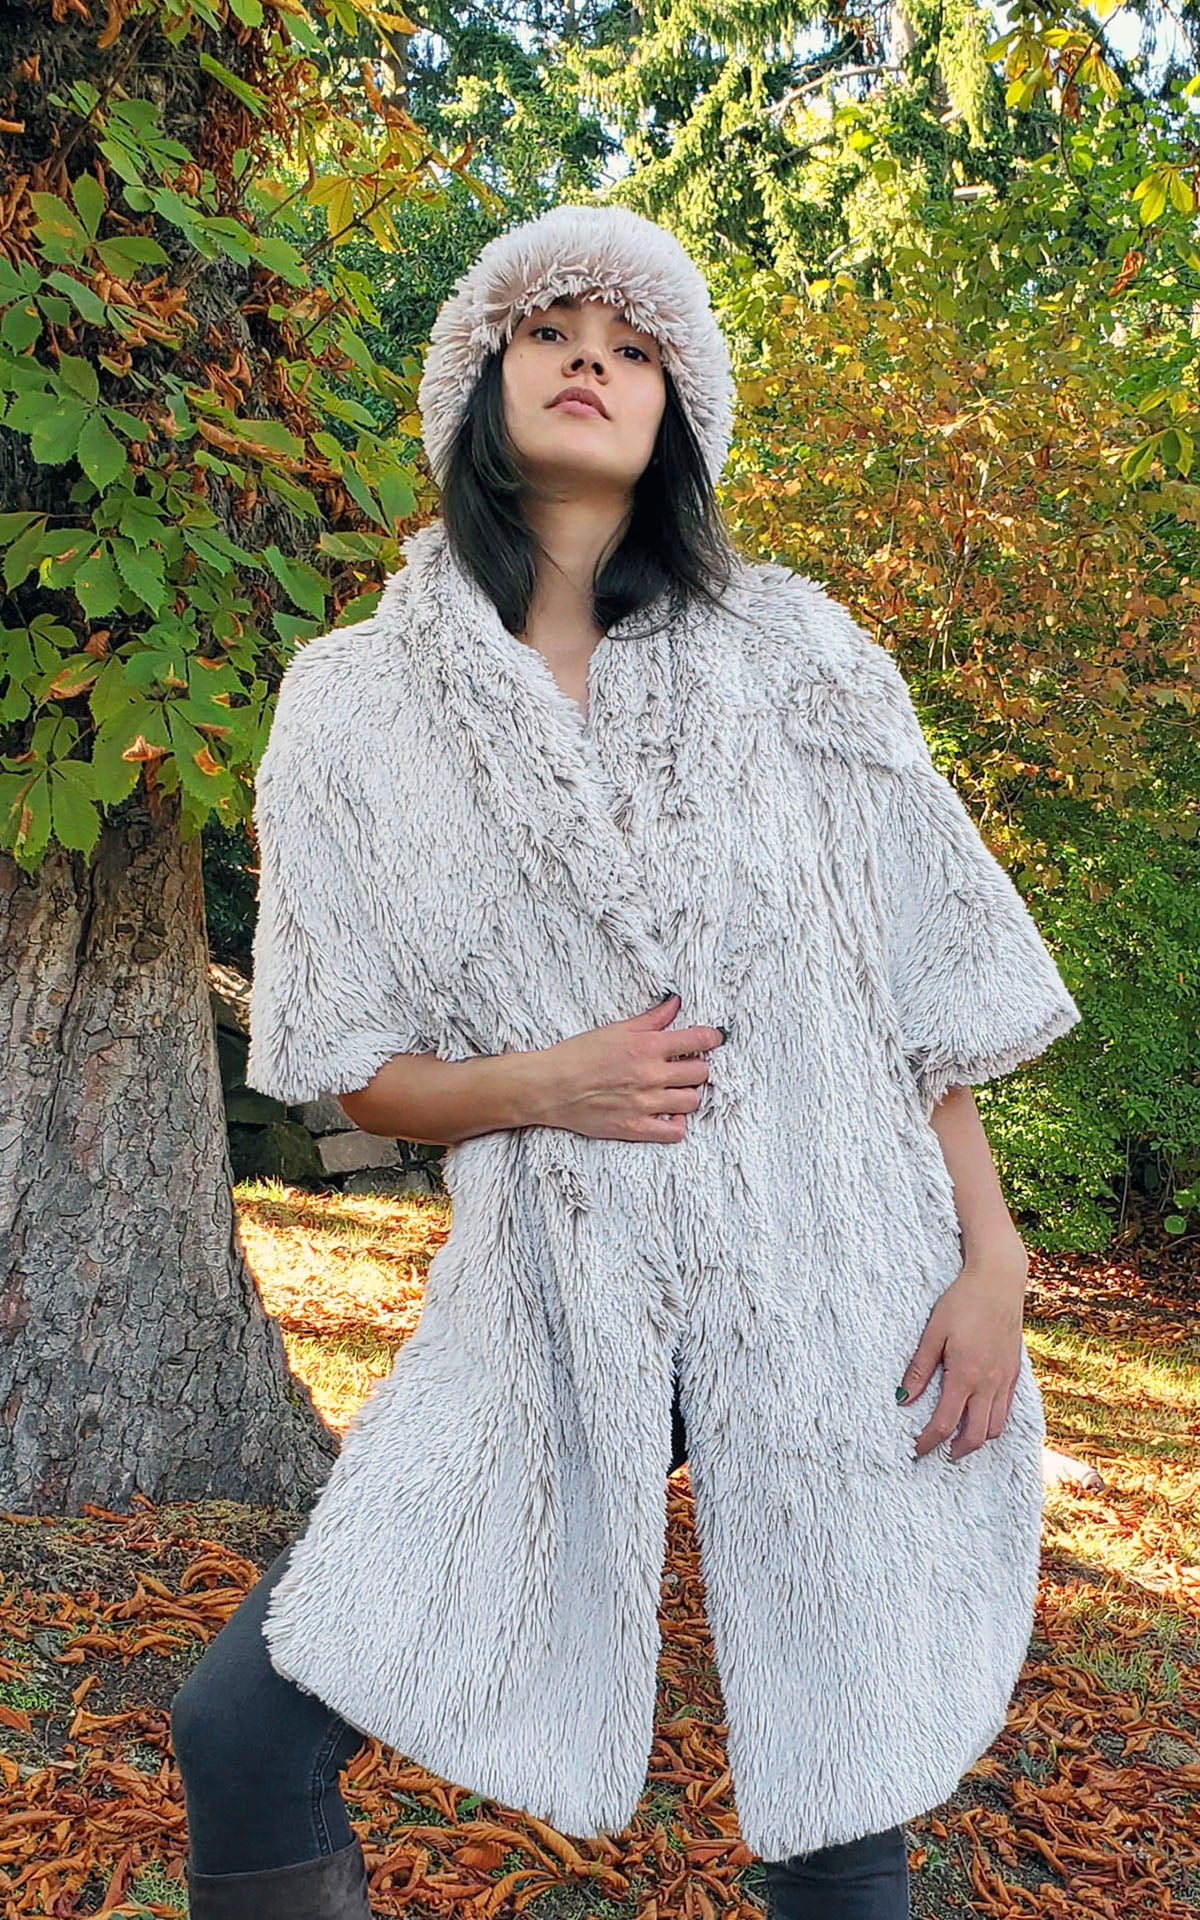 Model wearing Shrug Wrap in Foxy Beach Faux Fur Handmade by Pandemonium Seattle